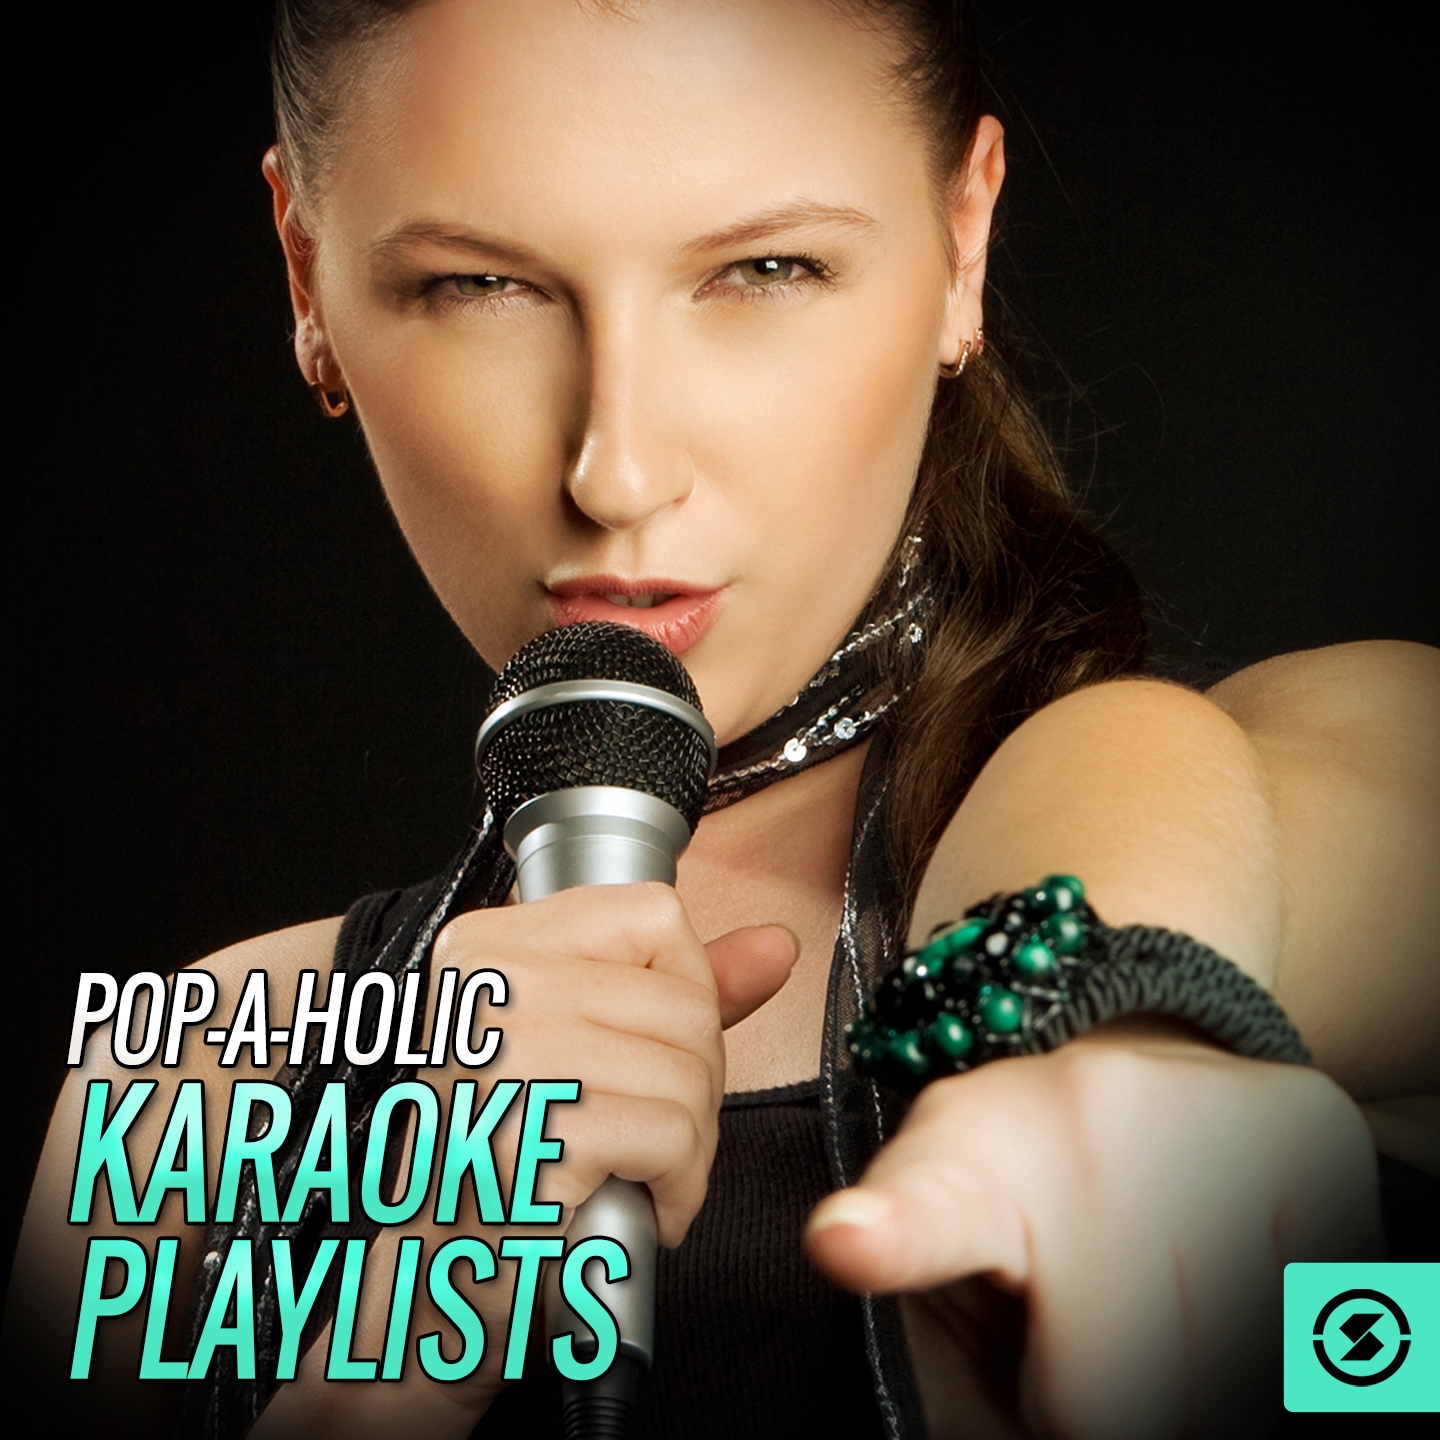 Pop - A - Holic Karaoke Playlists